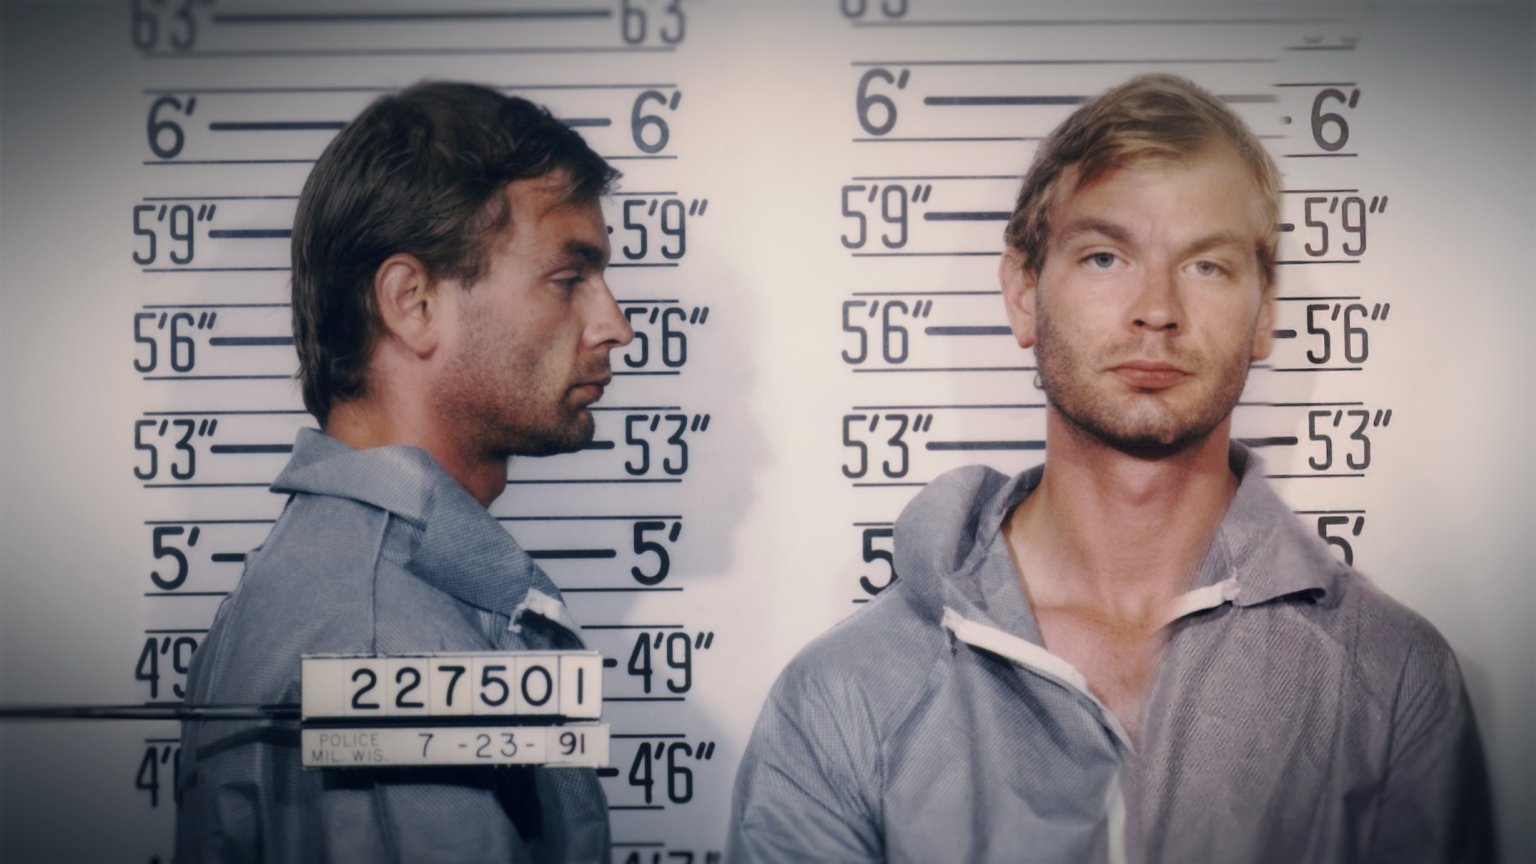 Nieuwe docuserie over seriemoordenaar Jeffrey Dahmer vanaf vandaag te zien op Netflix